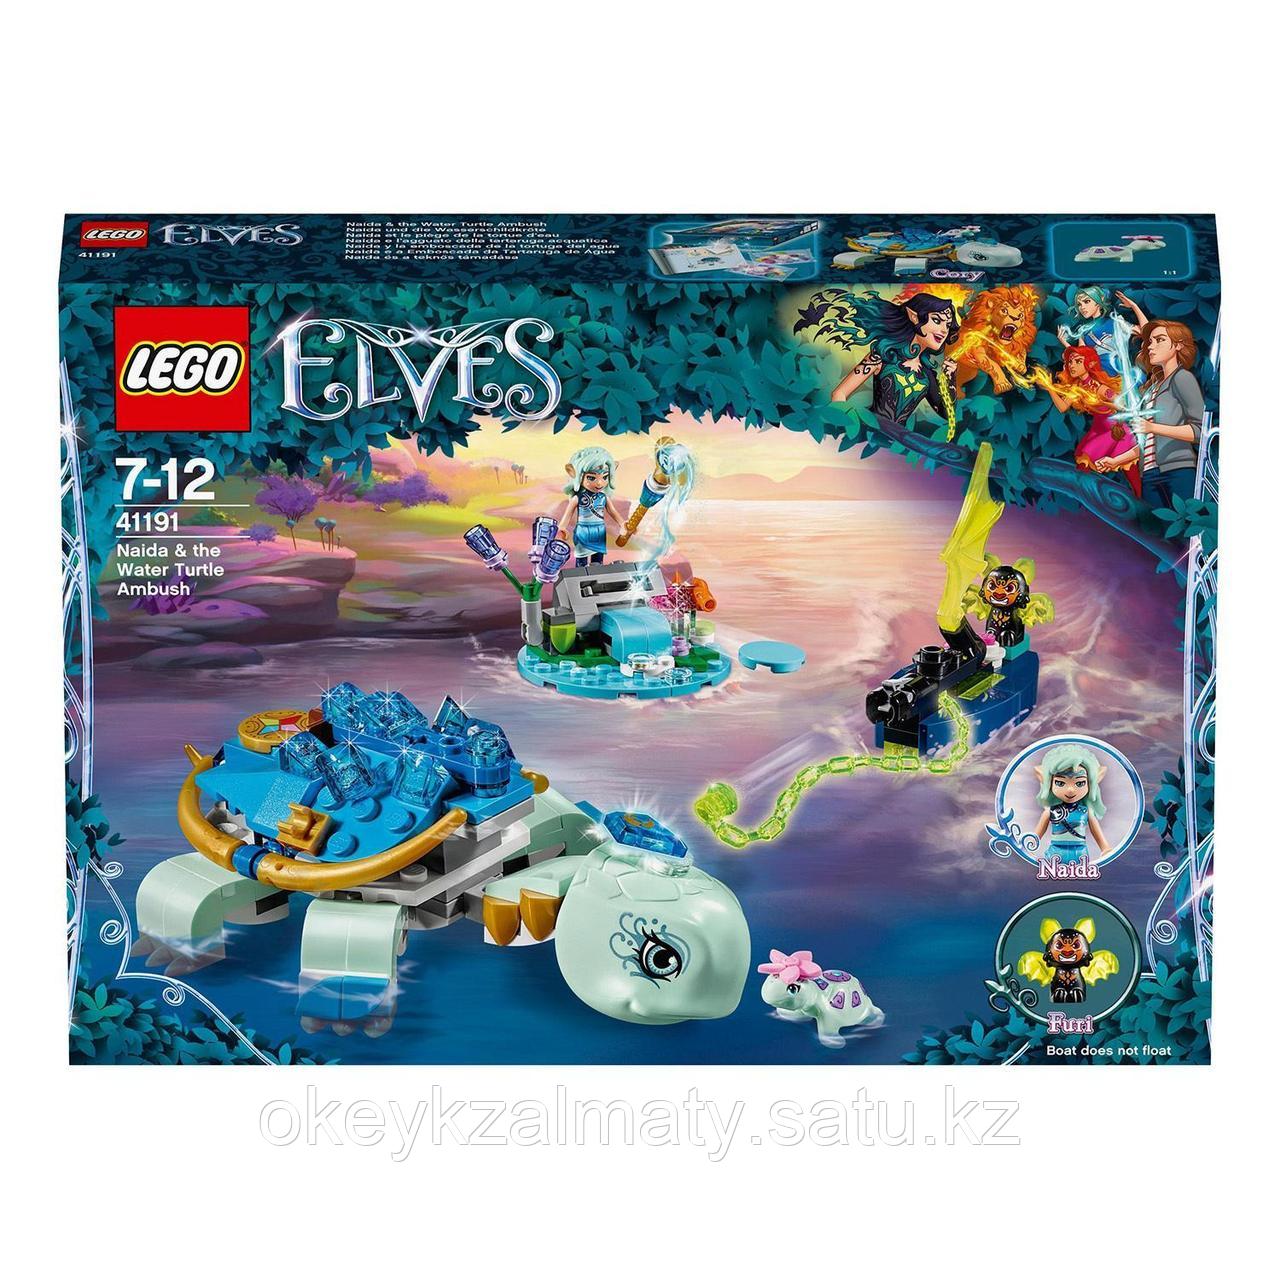 LEGO Elves: Засада Наиды и водяной черепахи 41191